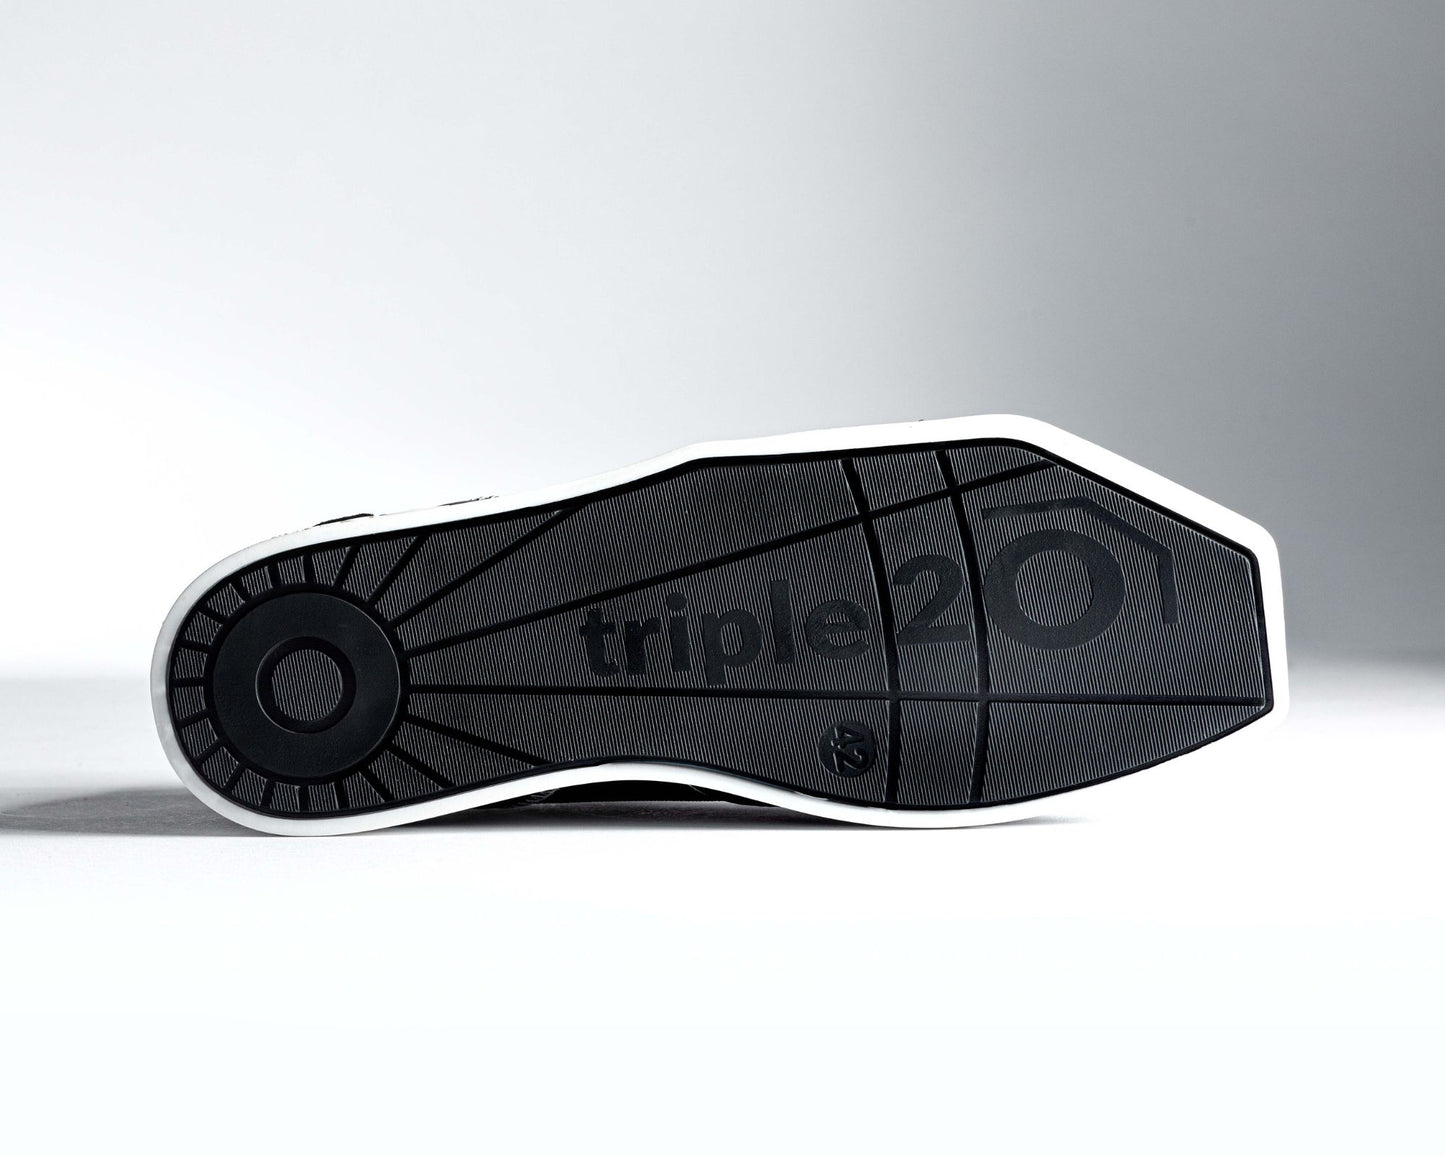 Detailaufnahme der Unterseite der Laufsohle eines triple20 Dartschuhs. Diese ist schwarz und präsentiert sich in einem vollendeten Design mit XXL Markenlogo, das sich über mehr als die Hälfte der Sohle erstreckt. Durch den weißen Sohlenrahmen wird die besondere Form der TPU-Sohle betont.